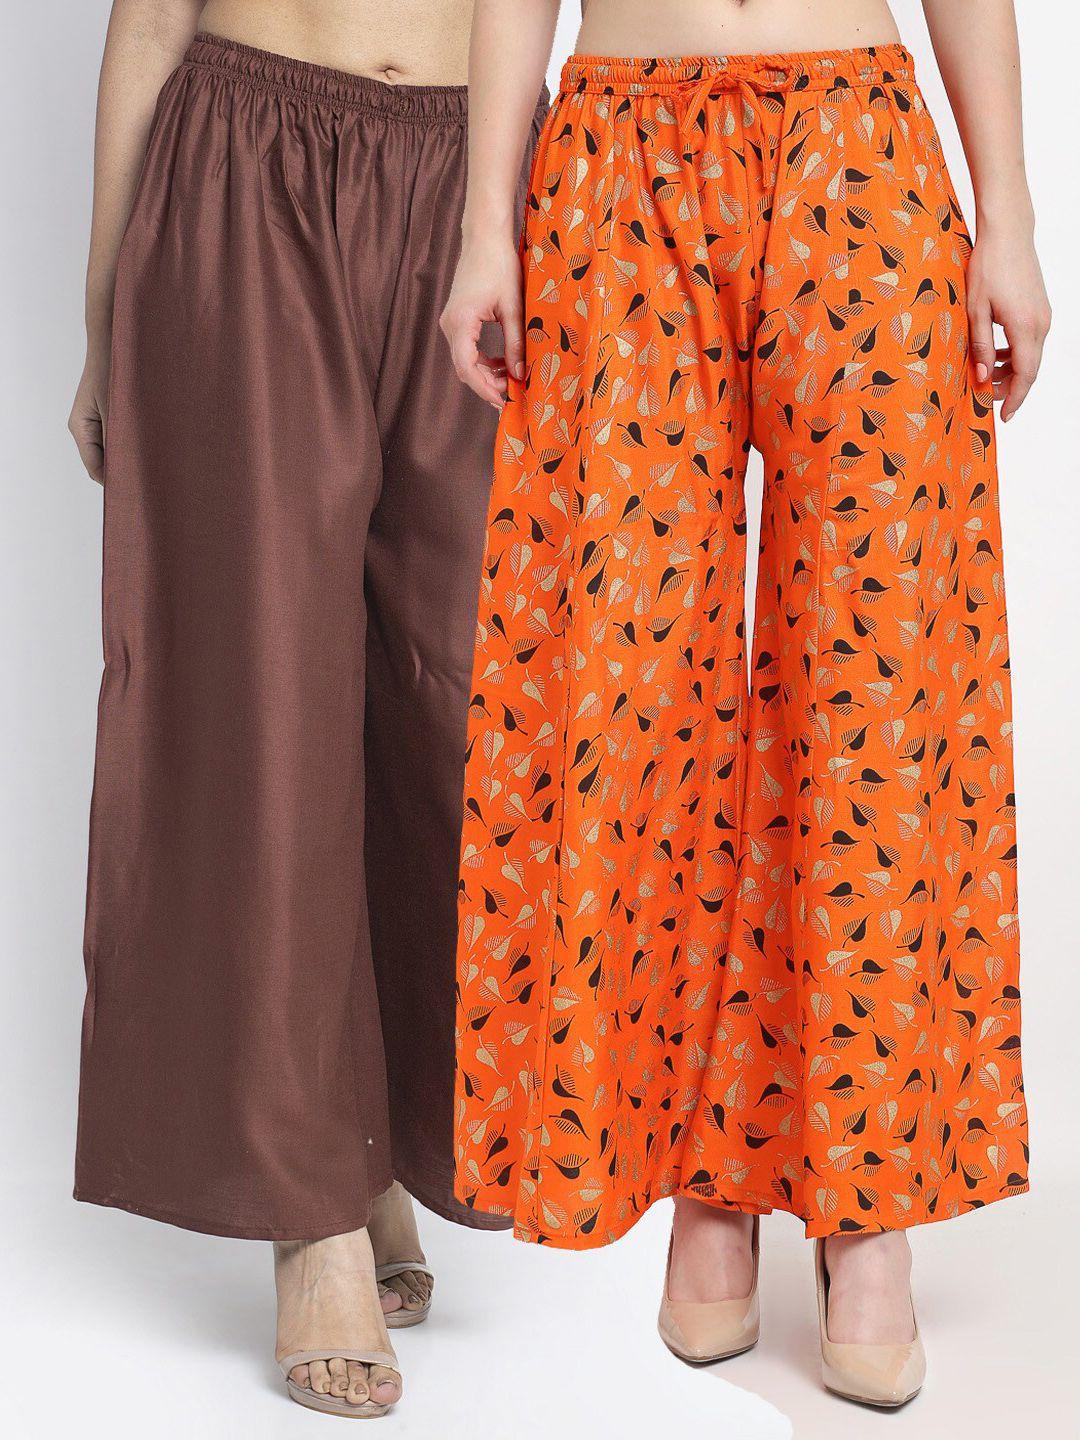 gracit women set of 2 brown & orange printed rayon palazzos